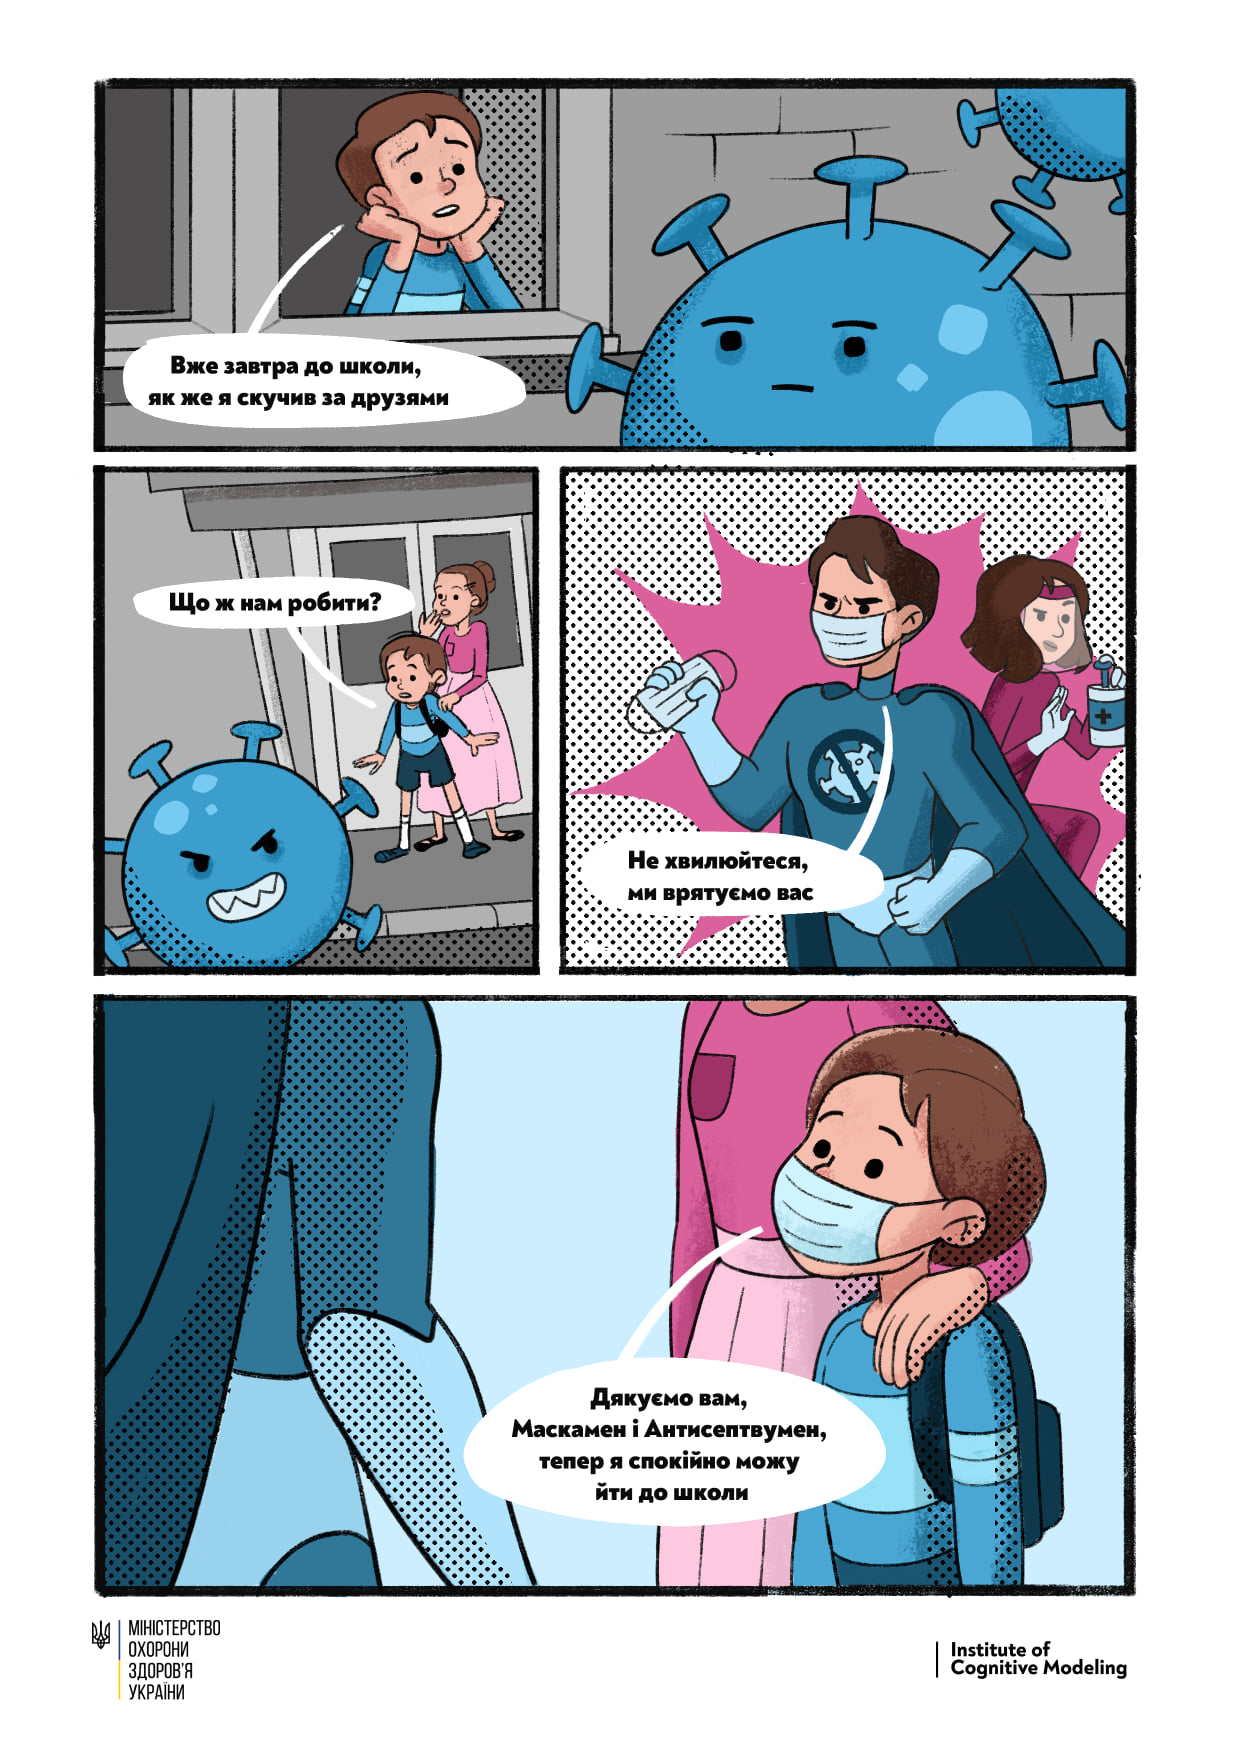 Минздрав создал комиксы о коронавирусе. Скриншот: facebook.com/moz.ukr